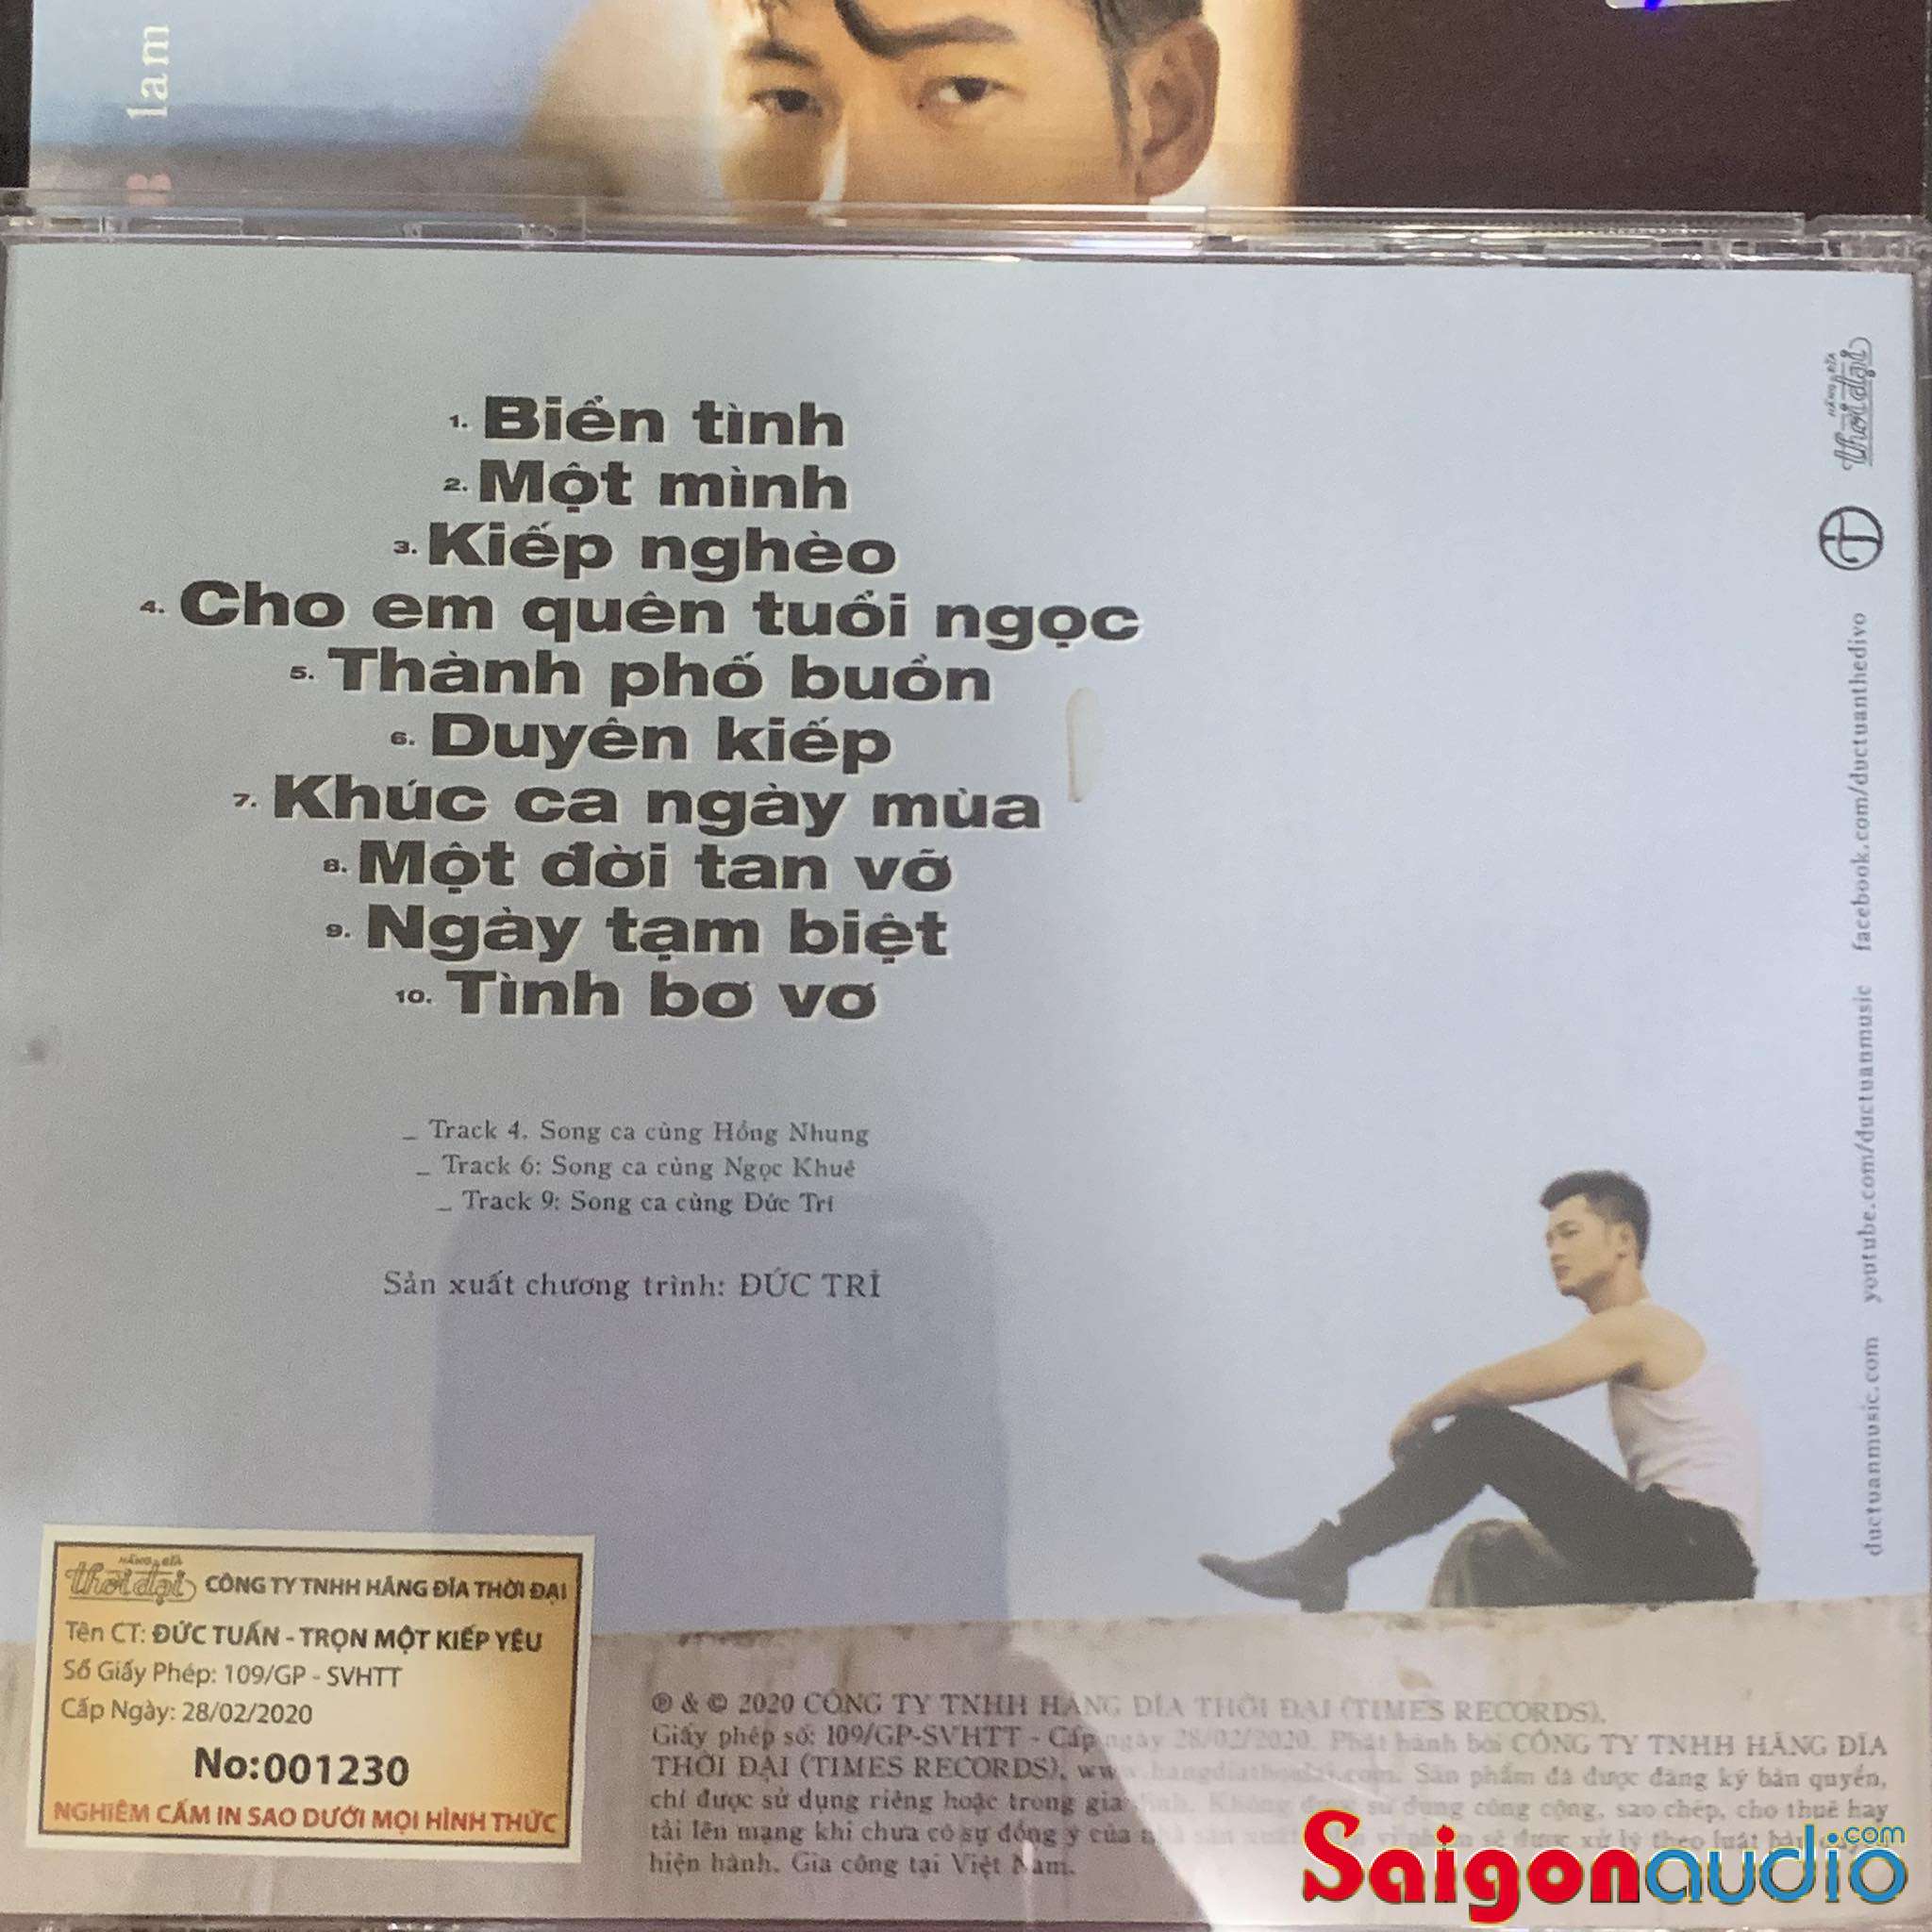 Đĩa CD nhạc gốc Đức Tuấn - Lam Phương - Trọn Một Kiếp Yêu (Free ship nhanh khi mua 2 đĩa CD cùng hoặc khác loại)